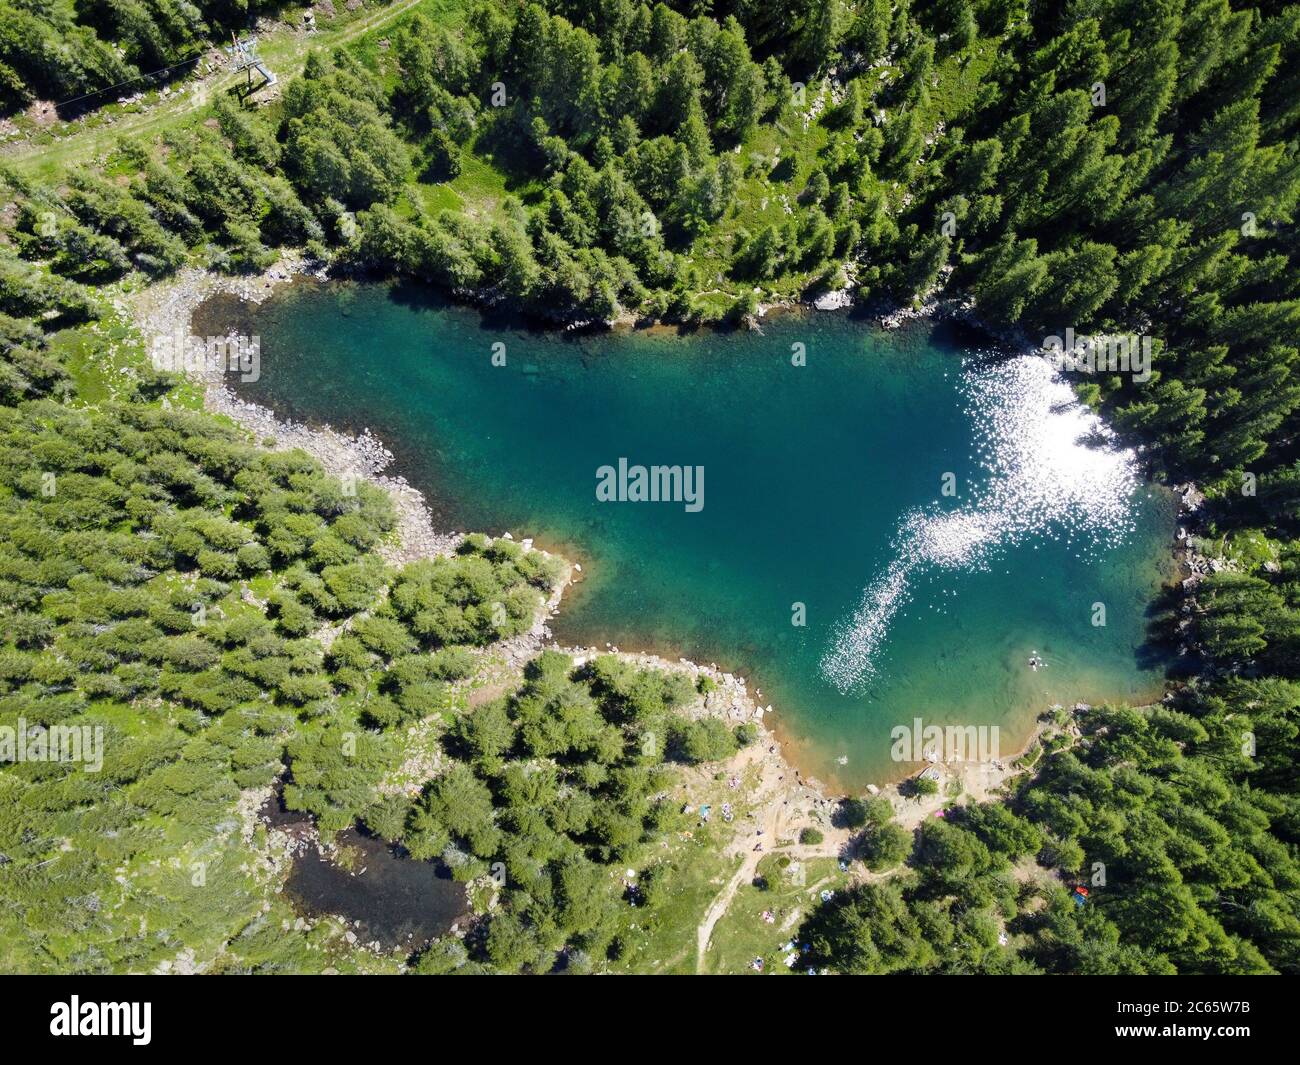 Vista aérea de un lago azul claro de montaña rodeado de bosques de coníferas verdes en un día soleado tirado de un drone Foto de stock